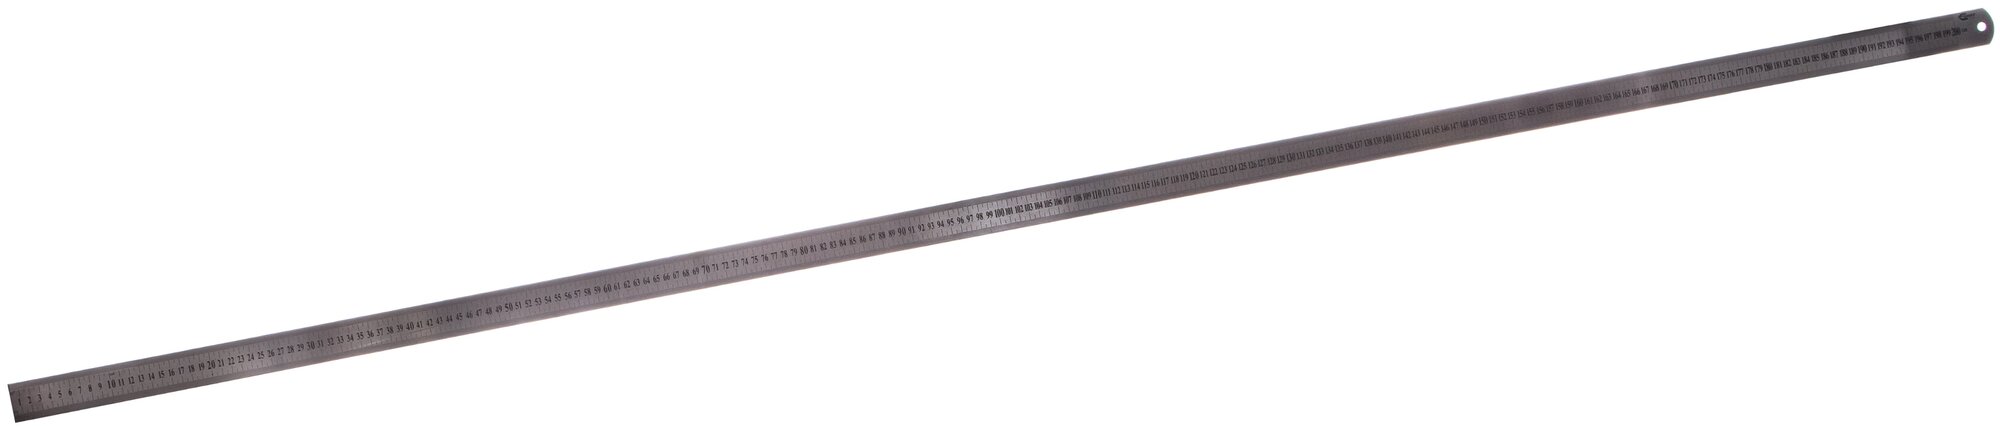 GRIFF Линейка металлическаяс двусторонней шкалой 2000x39x18мм D112026